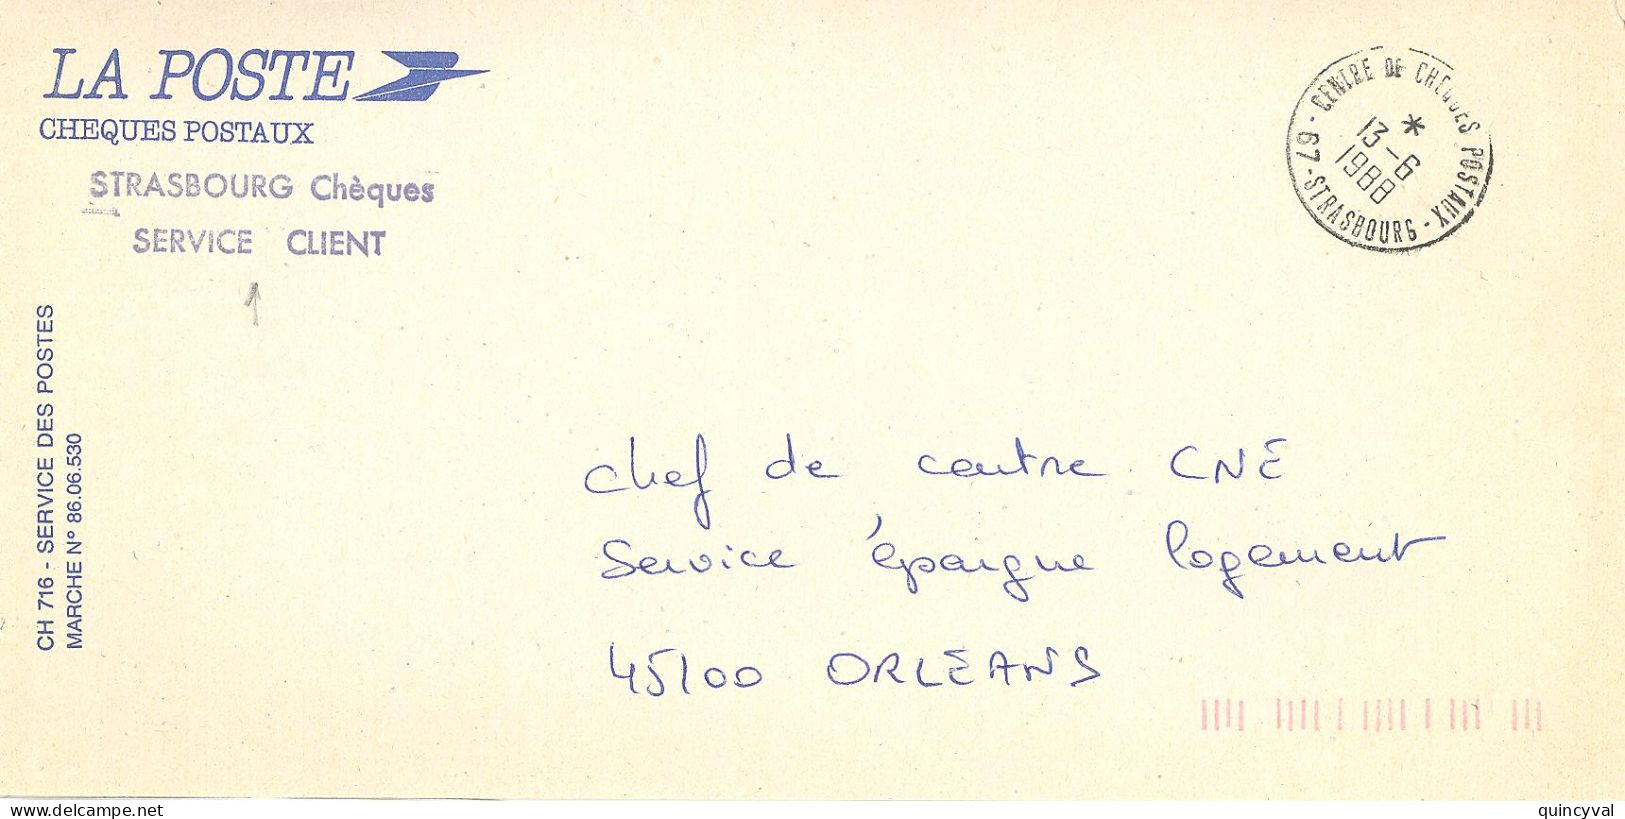 CENTRE DE CHEQUES POSATAUX 67 STRASBOURG  Ob 13 6 1988  Lettre Enveloppe CCP Cheques Postaux - Cachets Manuels